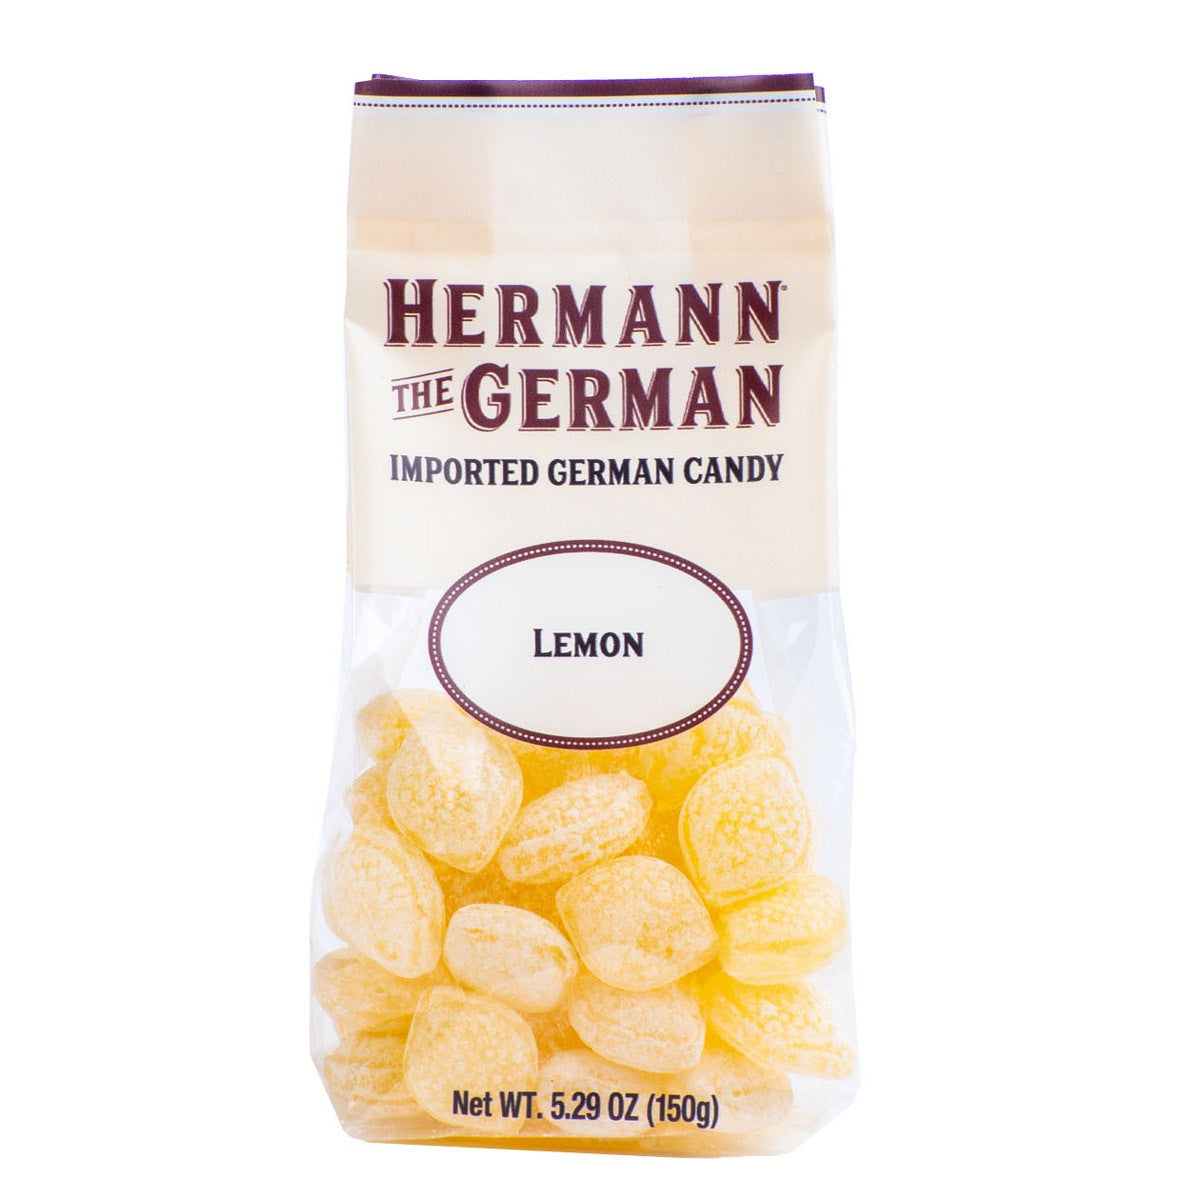 Hermann the German Lemon Candy, 5.29 oz